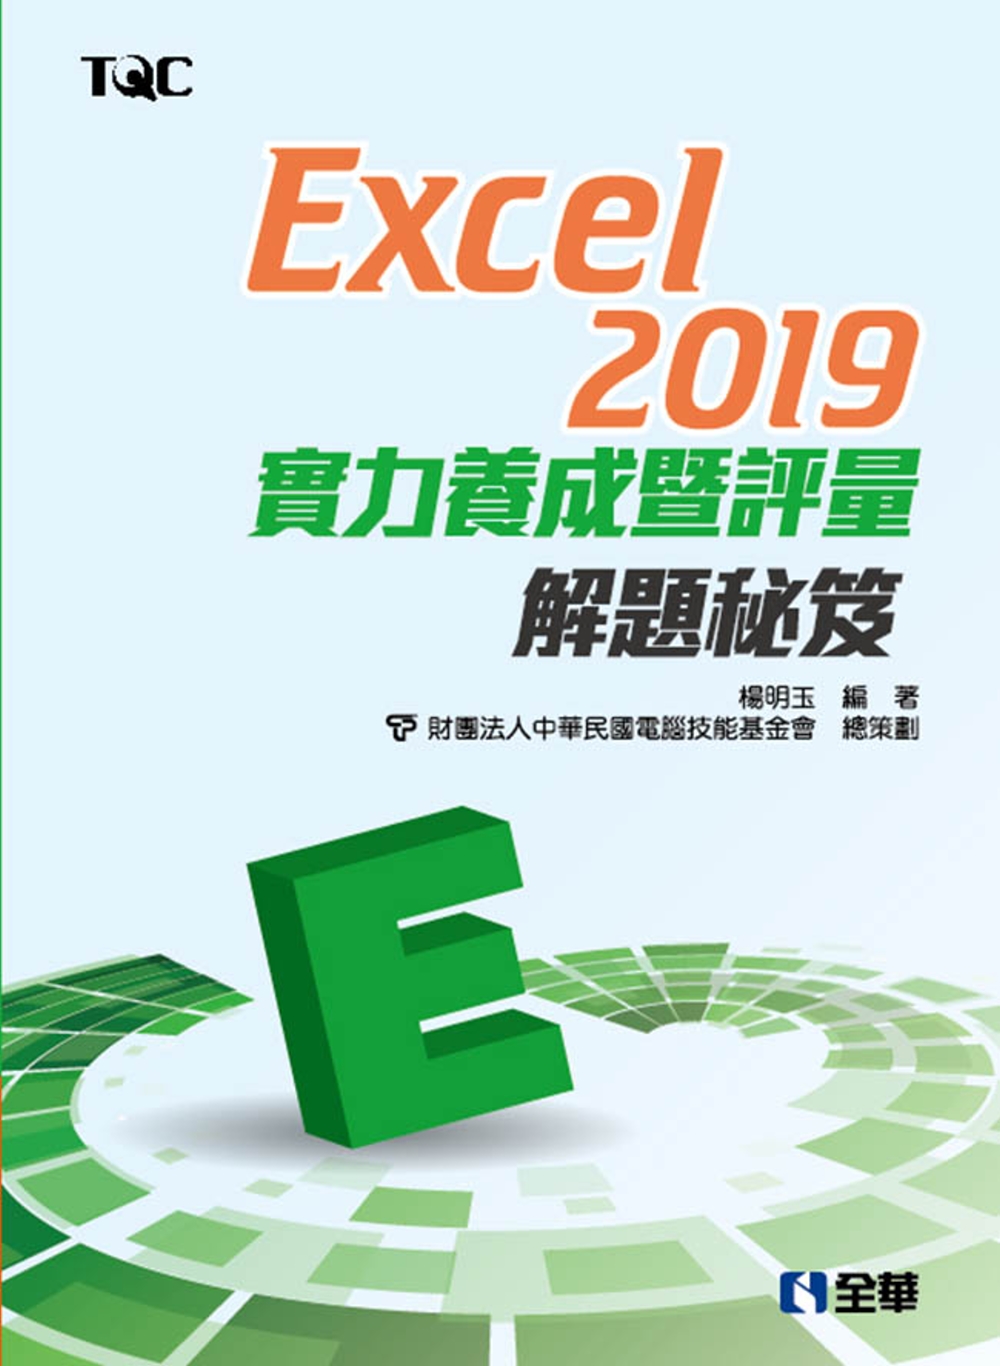 Excel 2019實力養成暨評量解題秘笈 